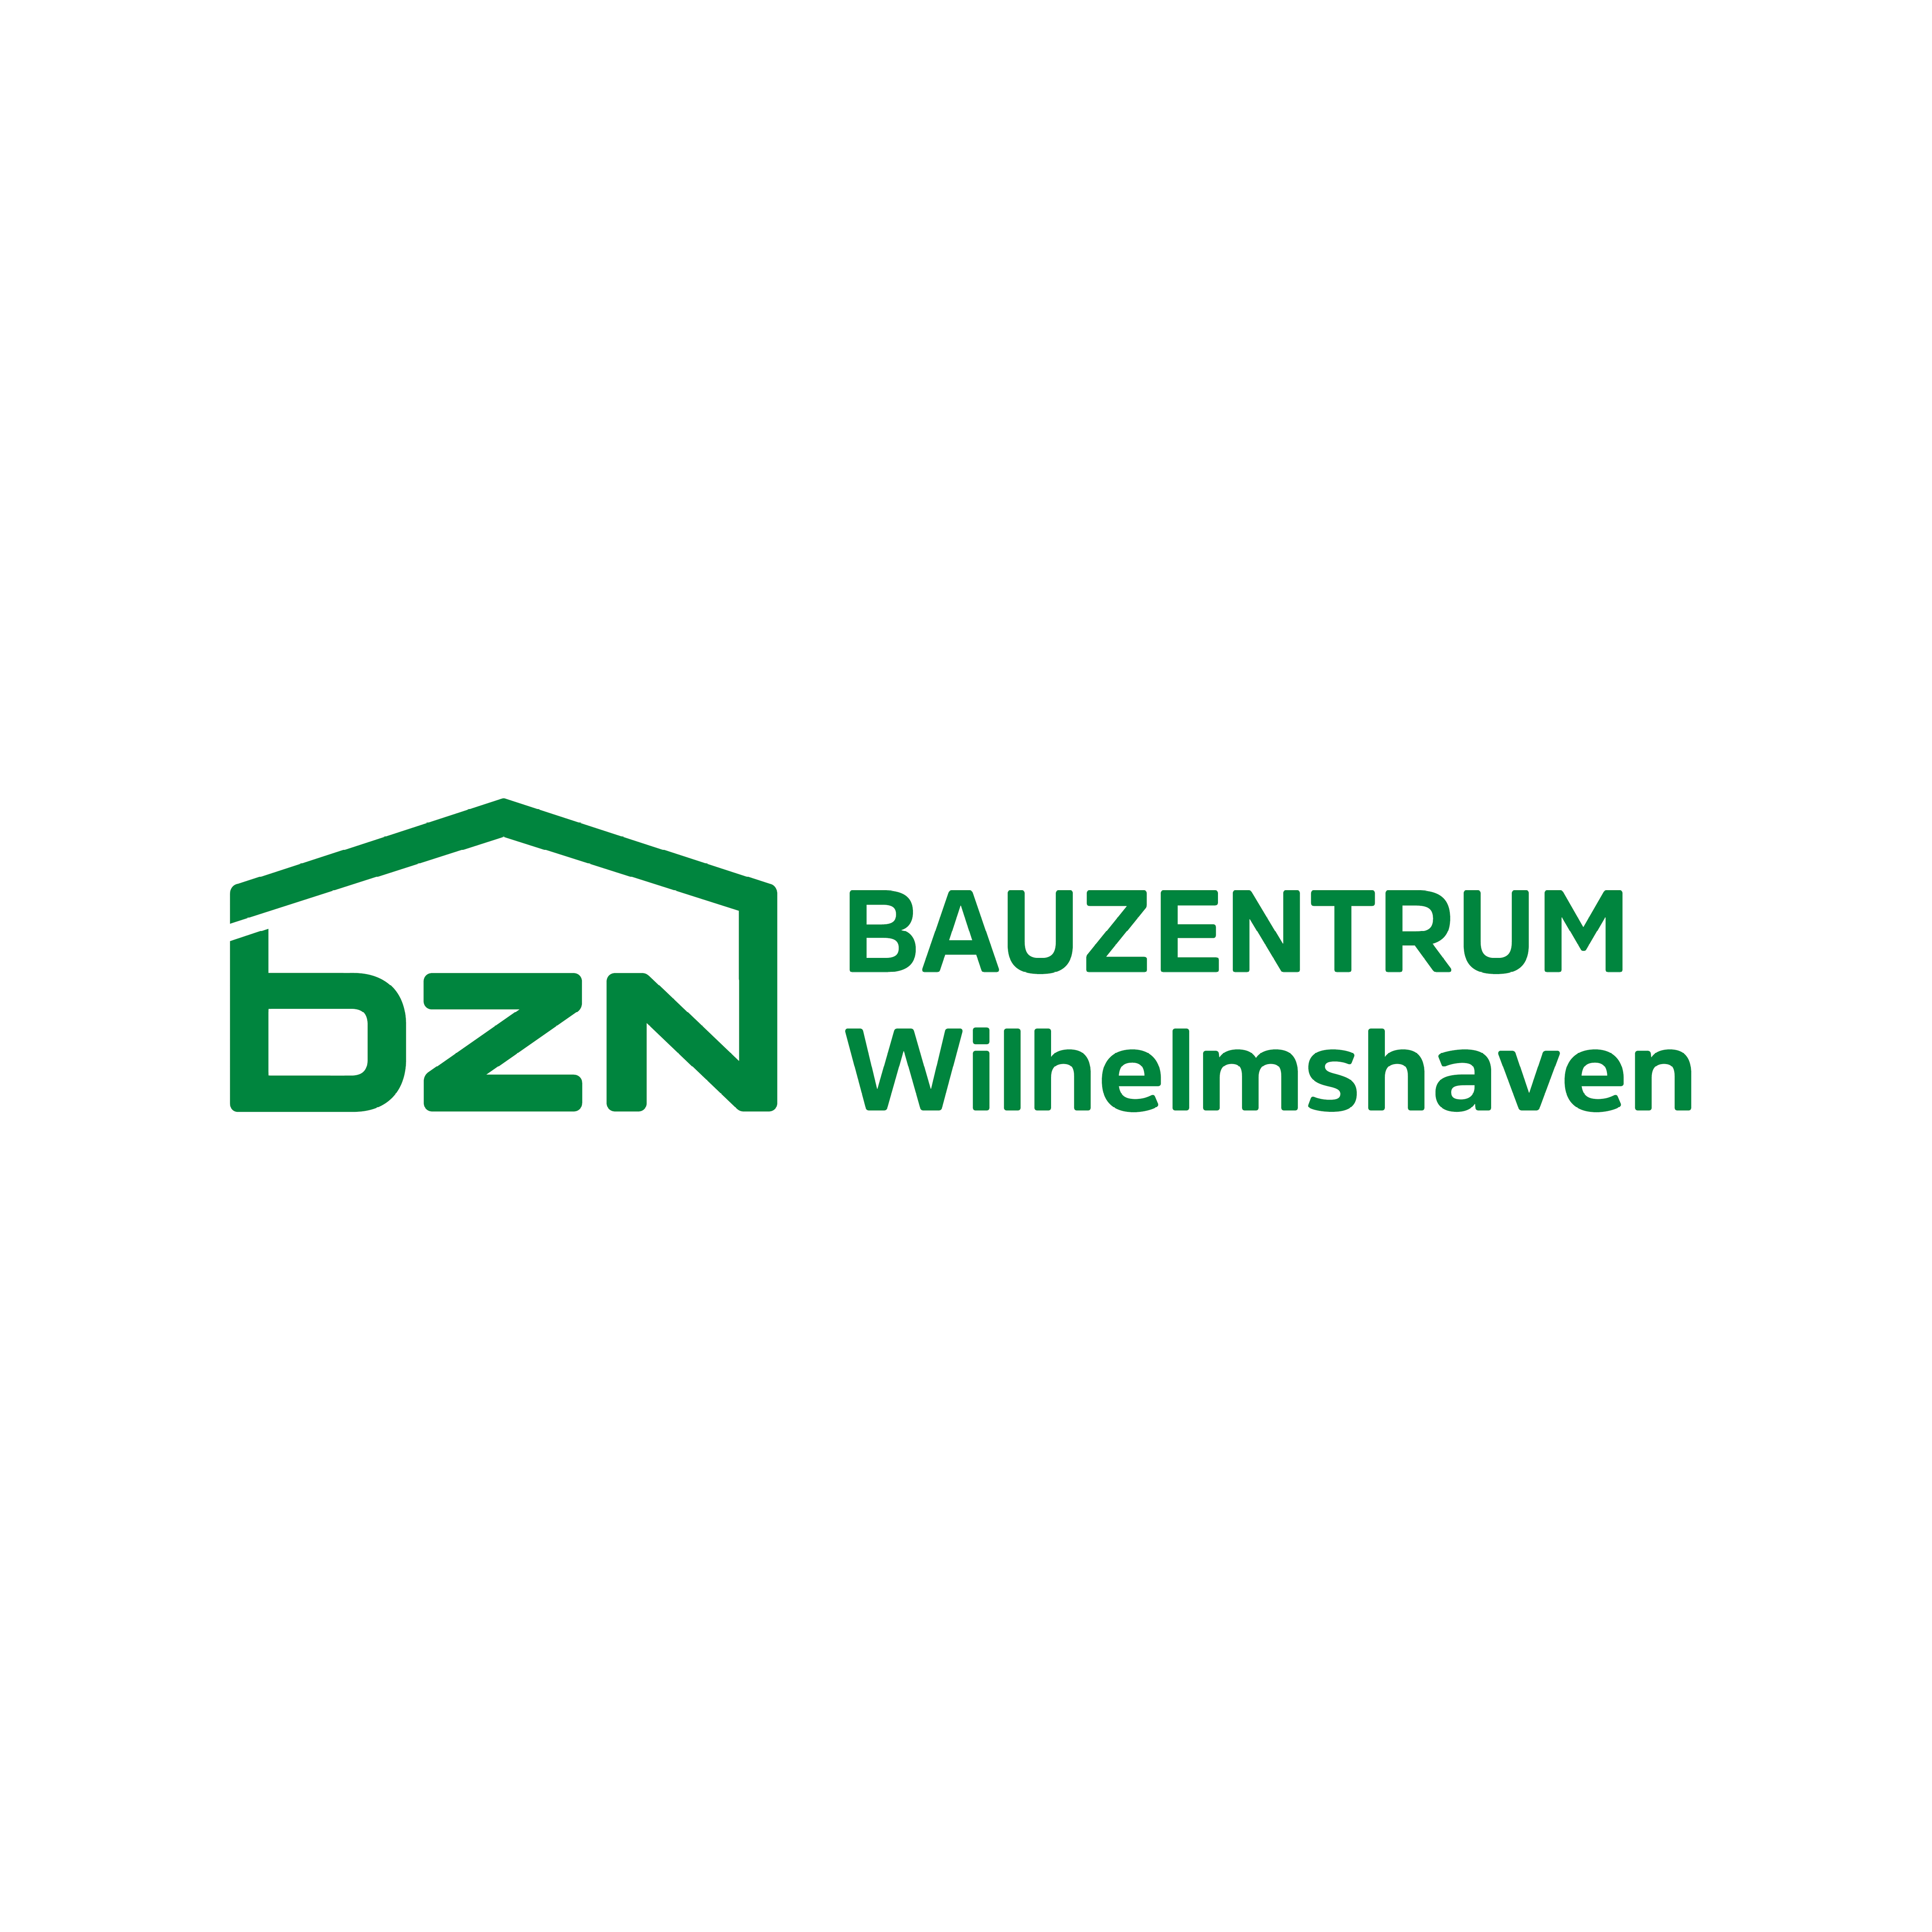 BZN Bauzentrum Wilhelmshaven GmbH & Co. KG in Wilhelmshaven - Logo